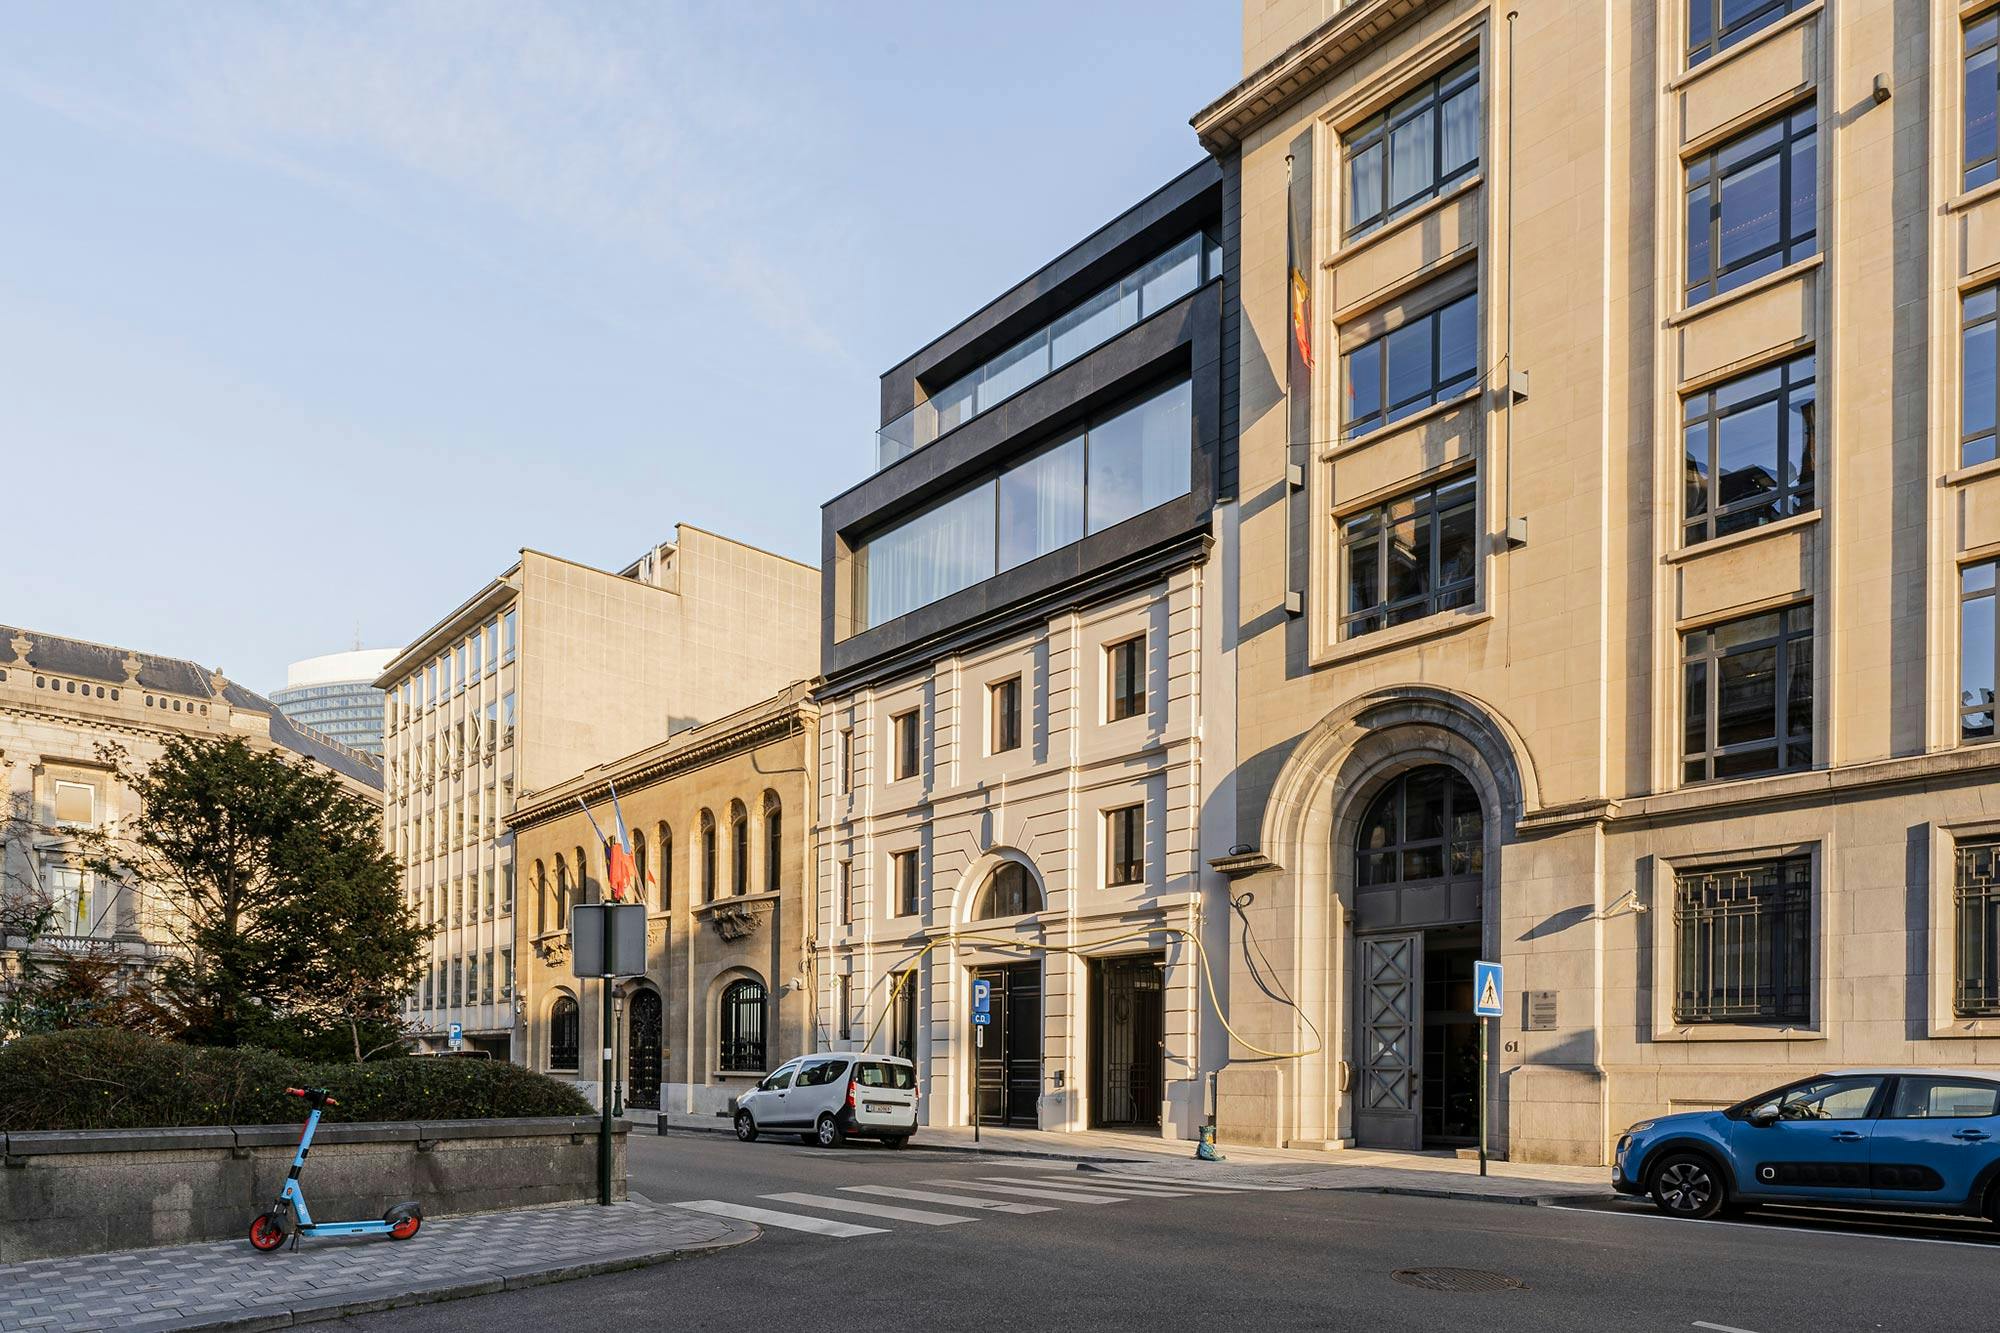 Numéro d'image 35 de la section actuelle de Réflexions en Dekton: la rénovation du bâtiment classique « The Duke » de Bruxelles de Cosentino France